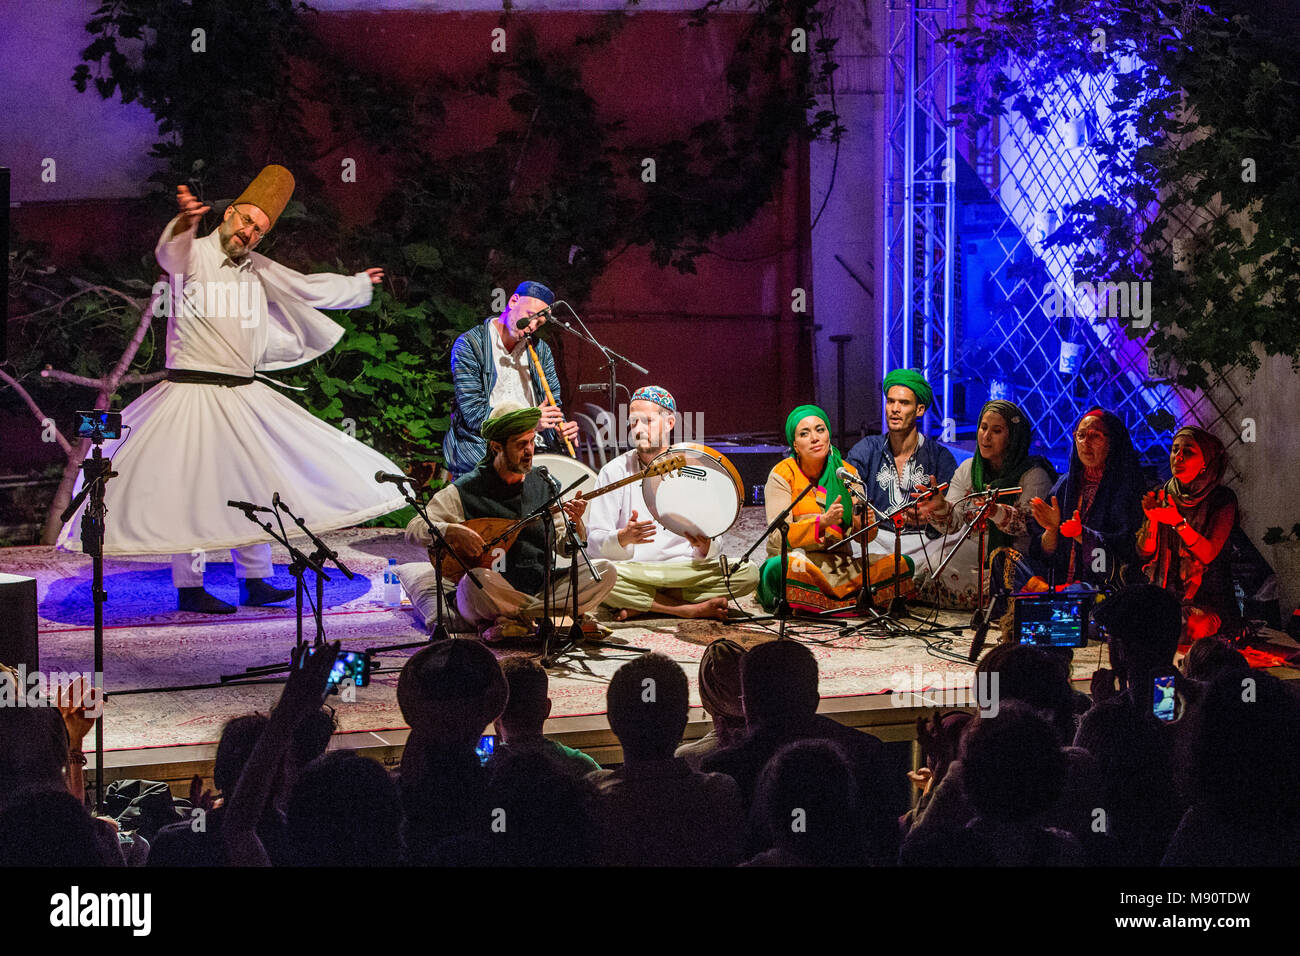 Concierto de música sufí en el Instituto de las Culturas Islámicas, París, Francia. Foto de stock